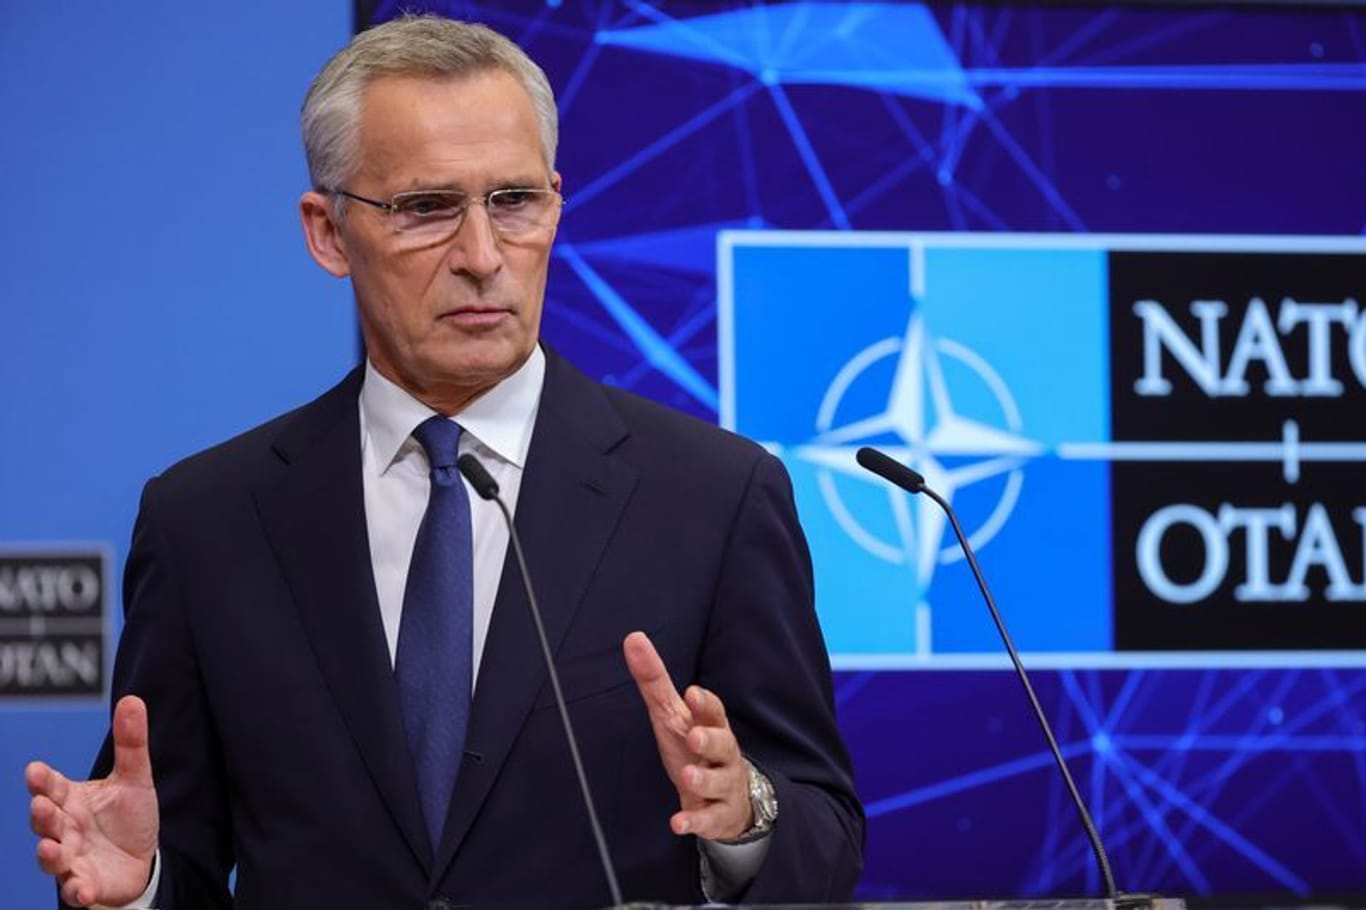 NATO-Generalsekretär Jens Stoltenberg: Die verdeckten nuklearen Drohungen von Russlands Präsident Wladimir Putin seien "gefährlich und unverantwortlich".